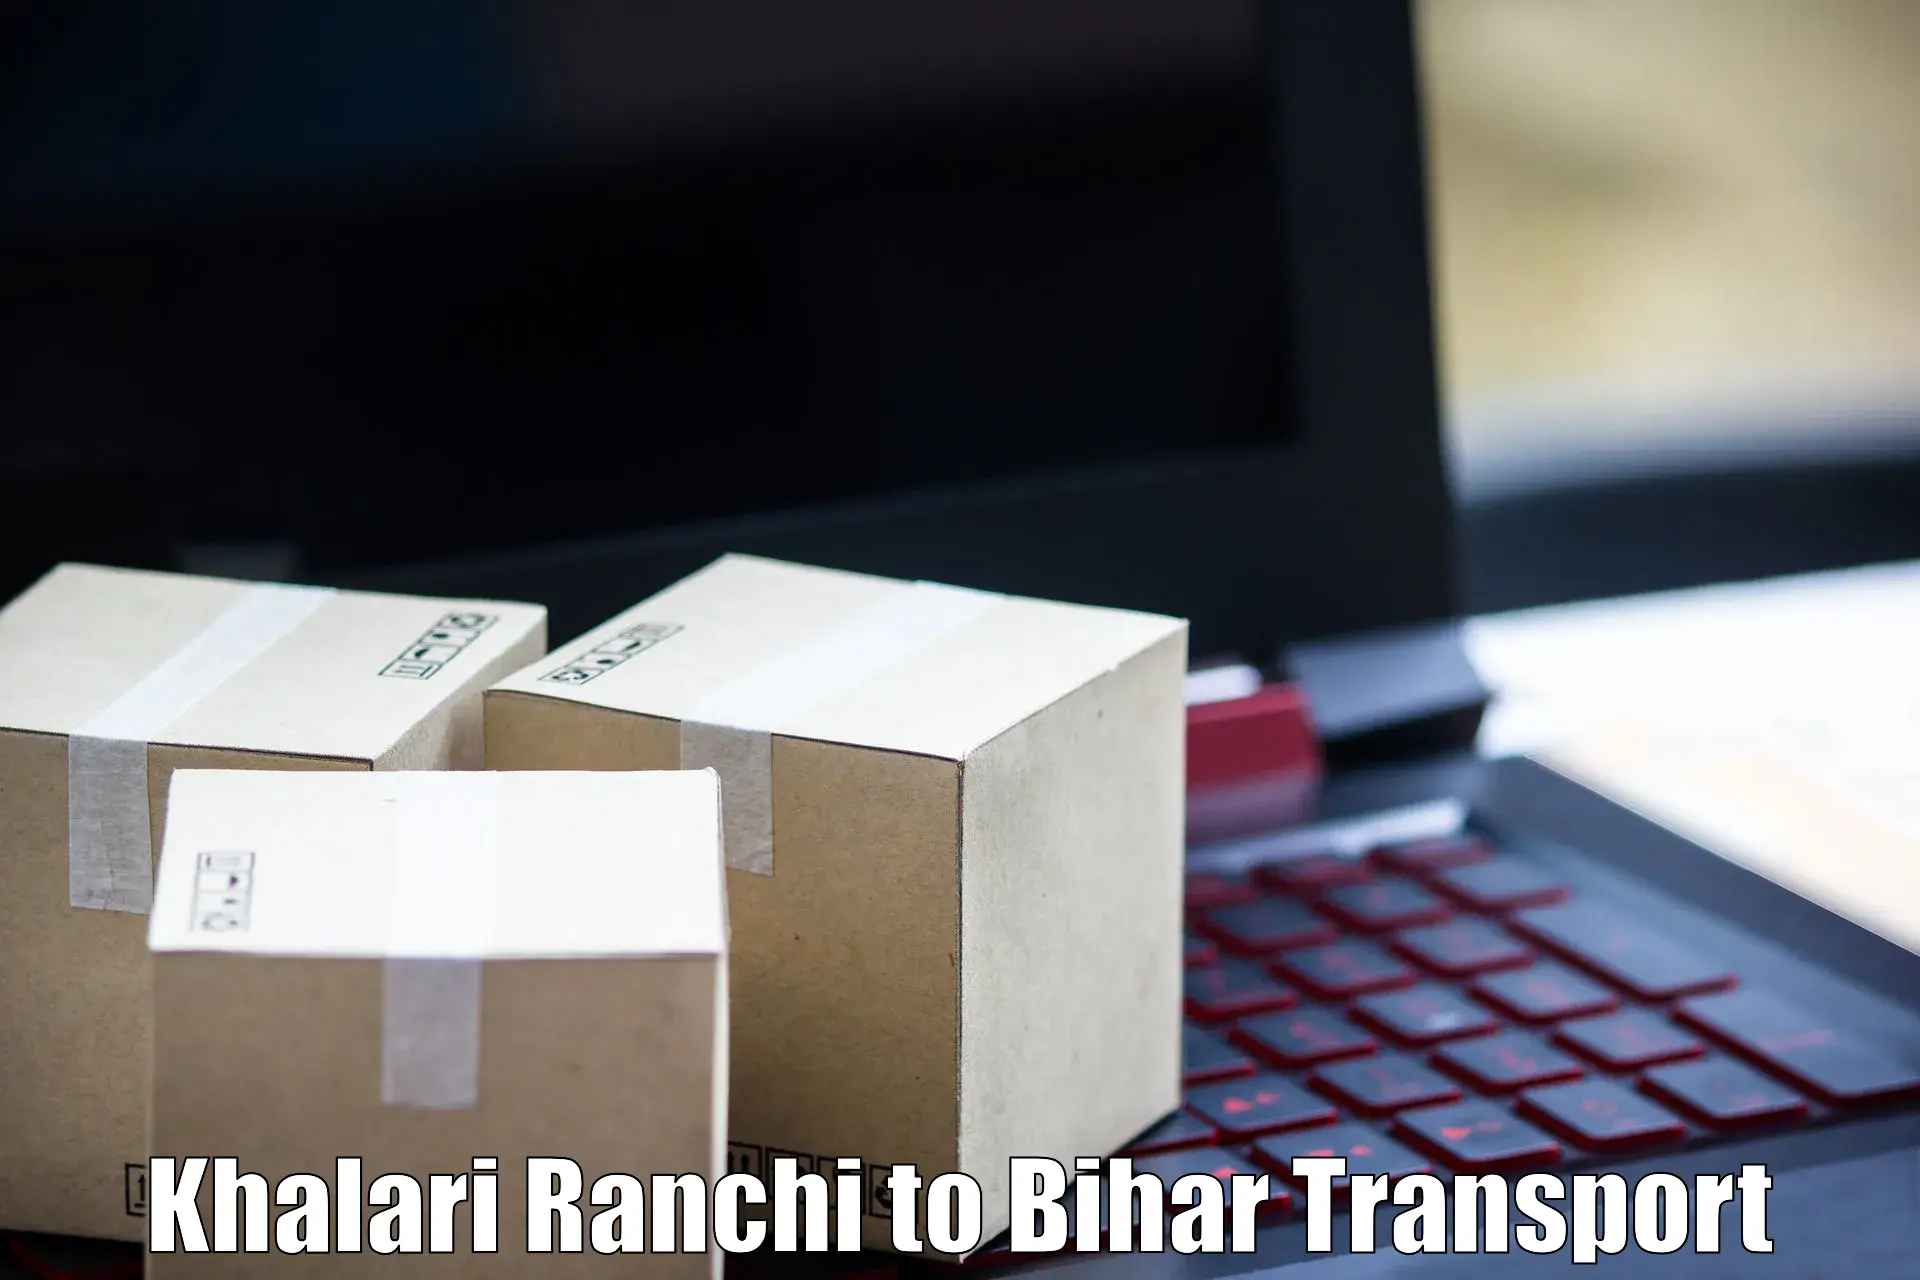 Daily transport service Khalari Ranchi to Jalalgarh